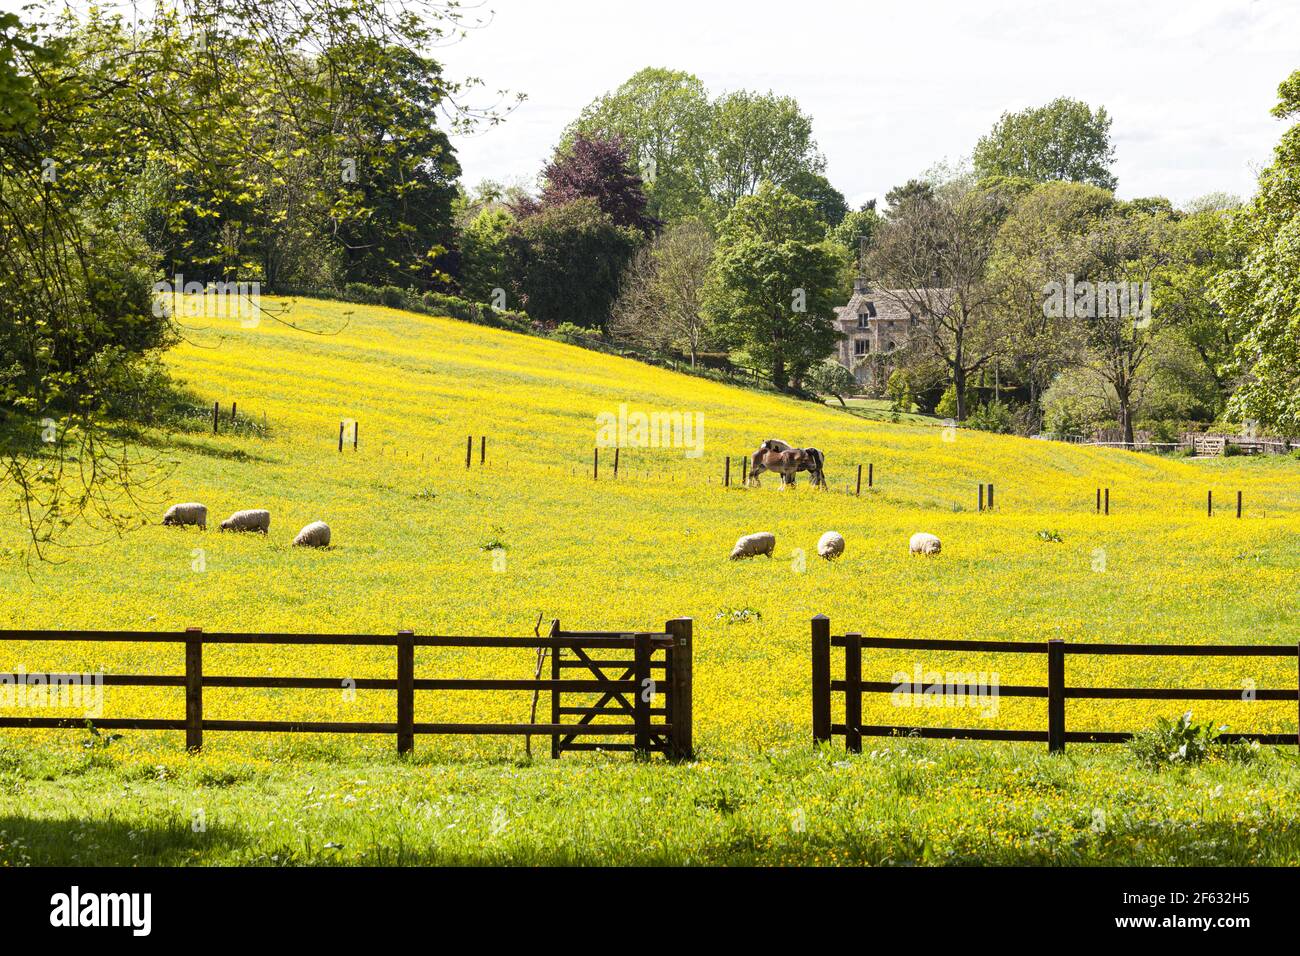 Die Cotswolds im Frühling - Pferde und Schafe in einem Feld von Butterblumen in Lower Dean in der Nähe von Turkdean, Gloucestershire UK Stockfoto